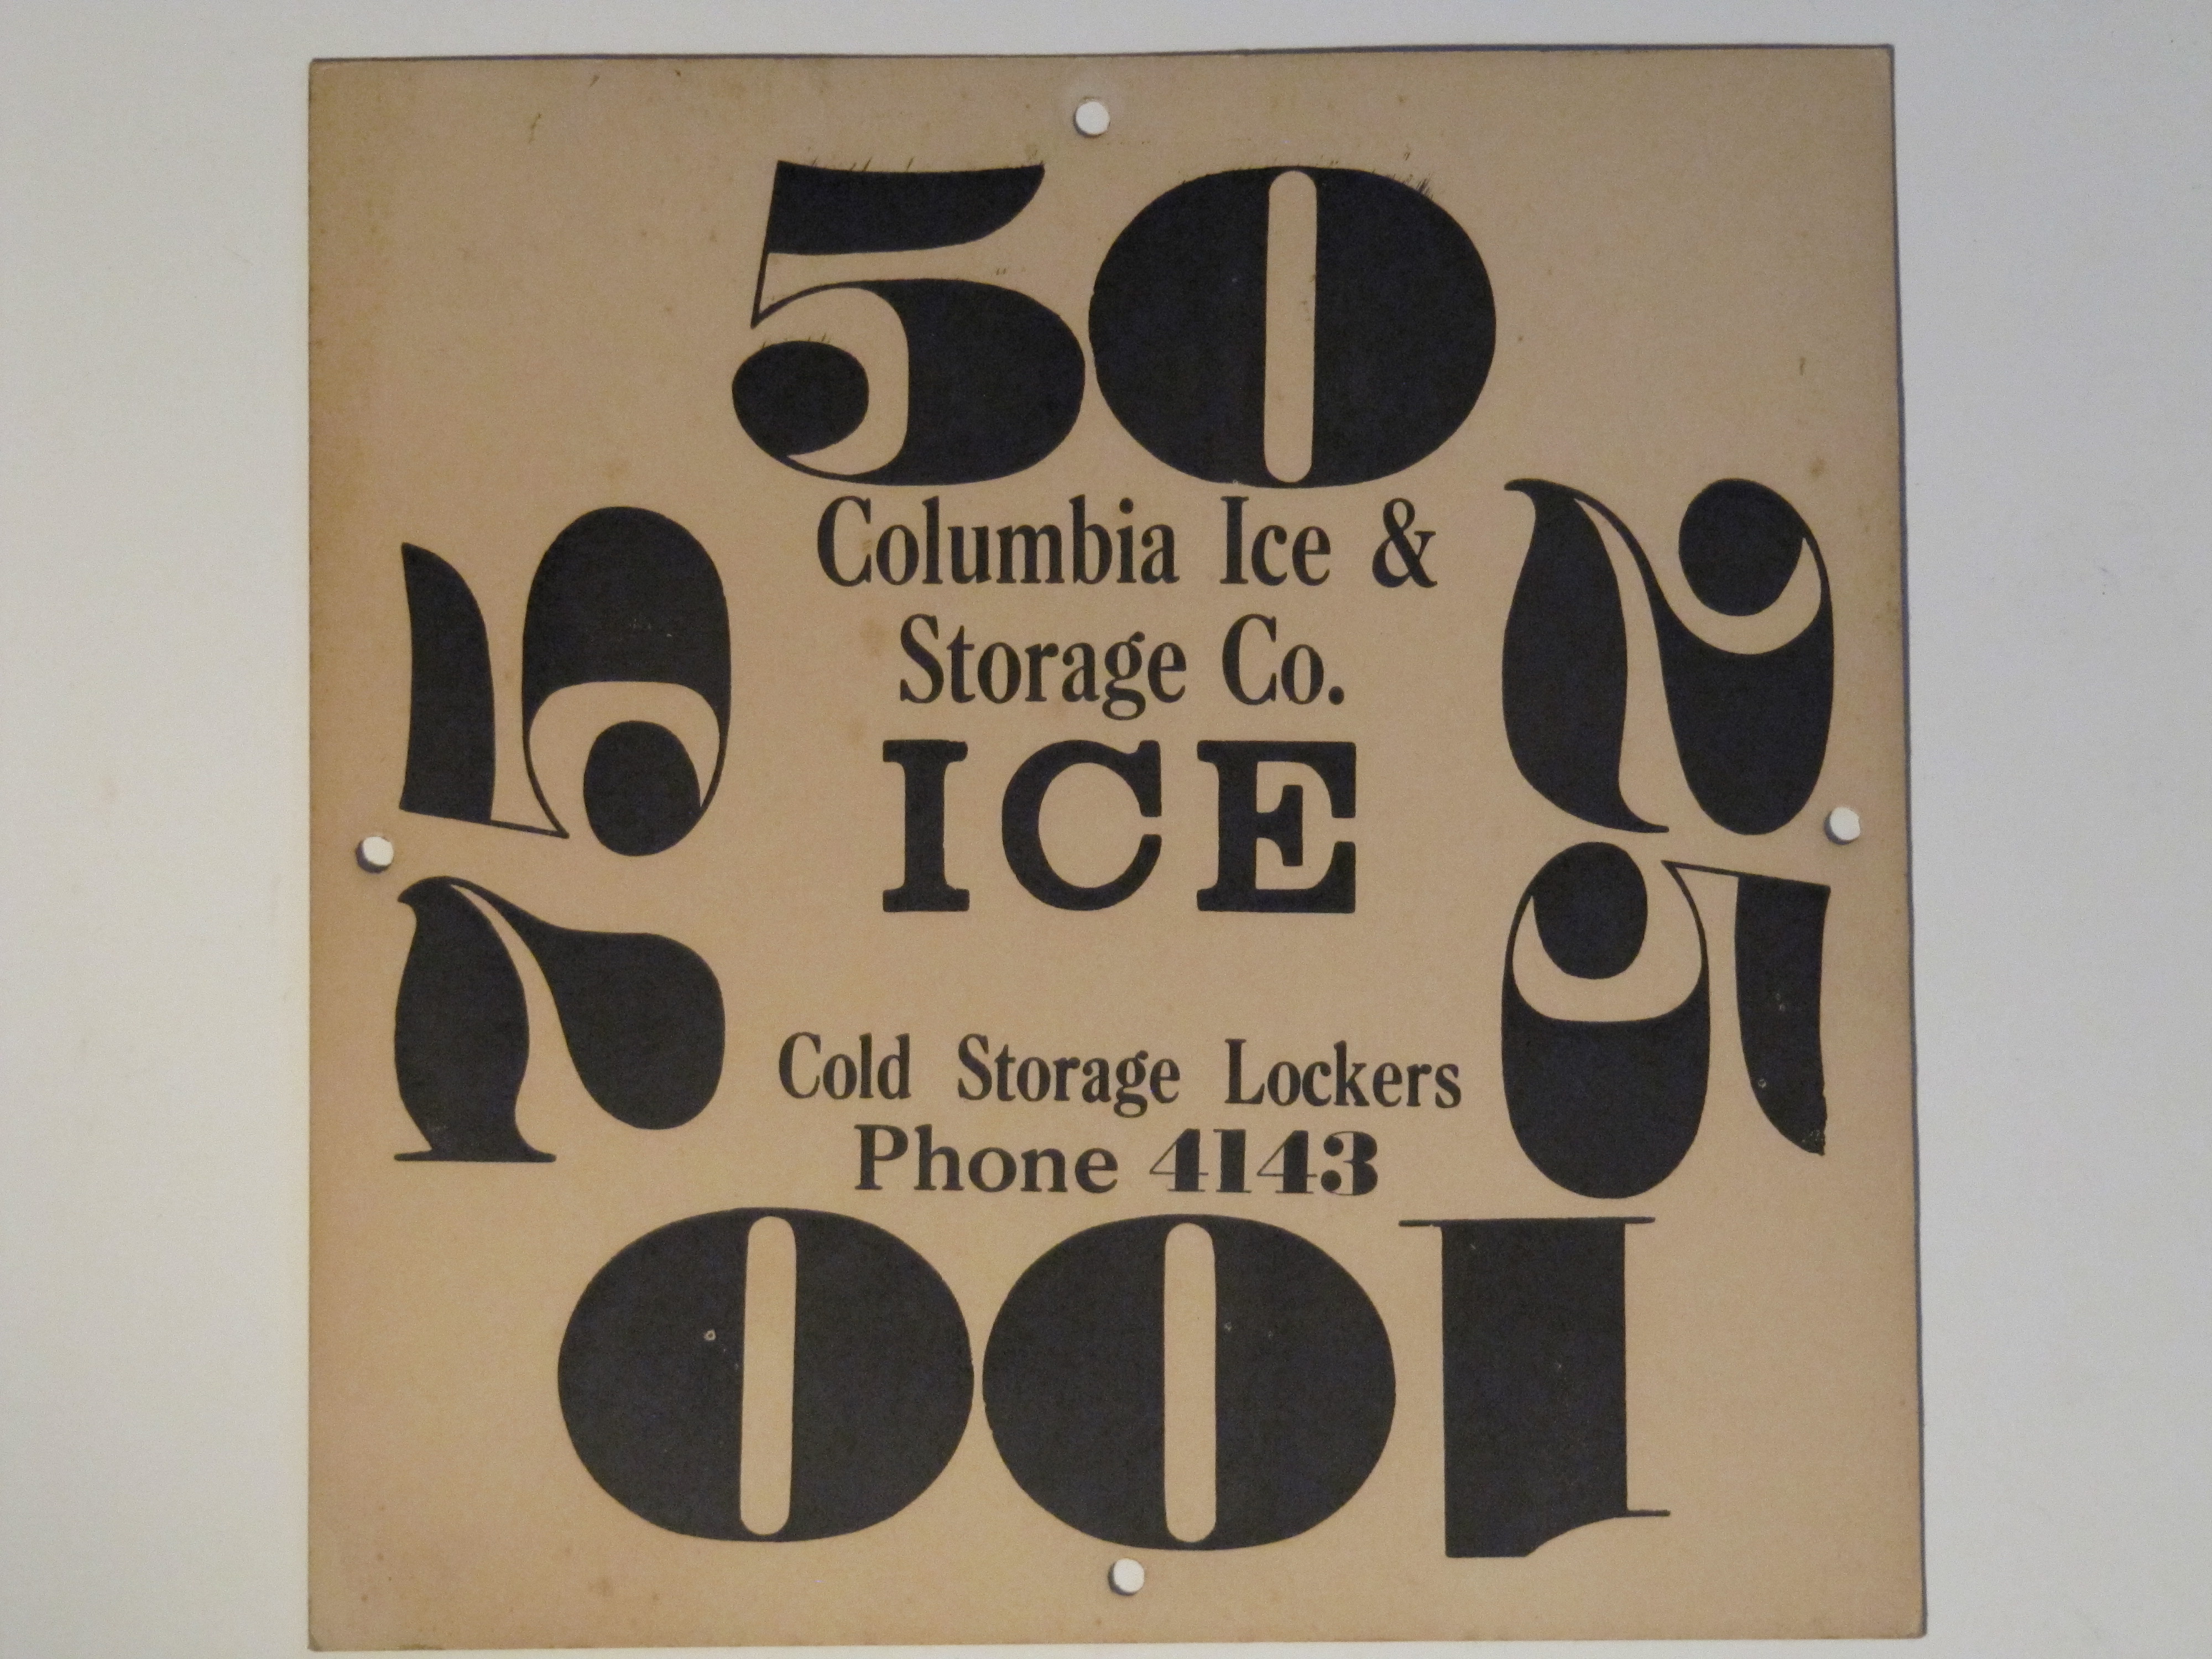 Columbia Ice & Storage Co.